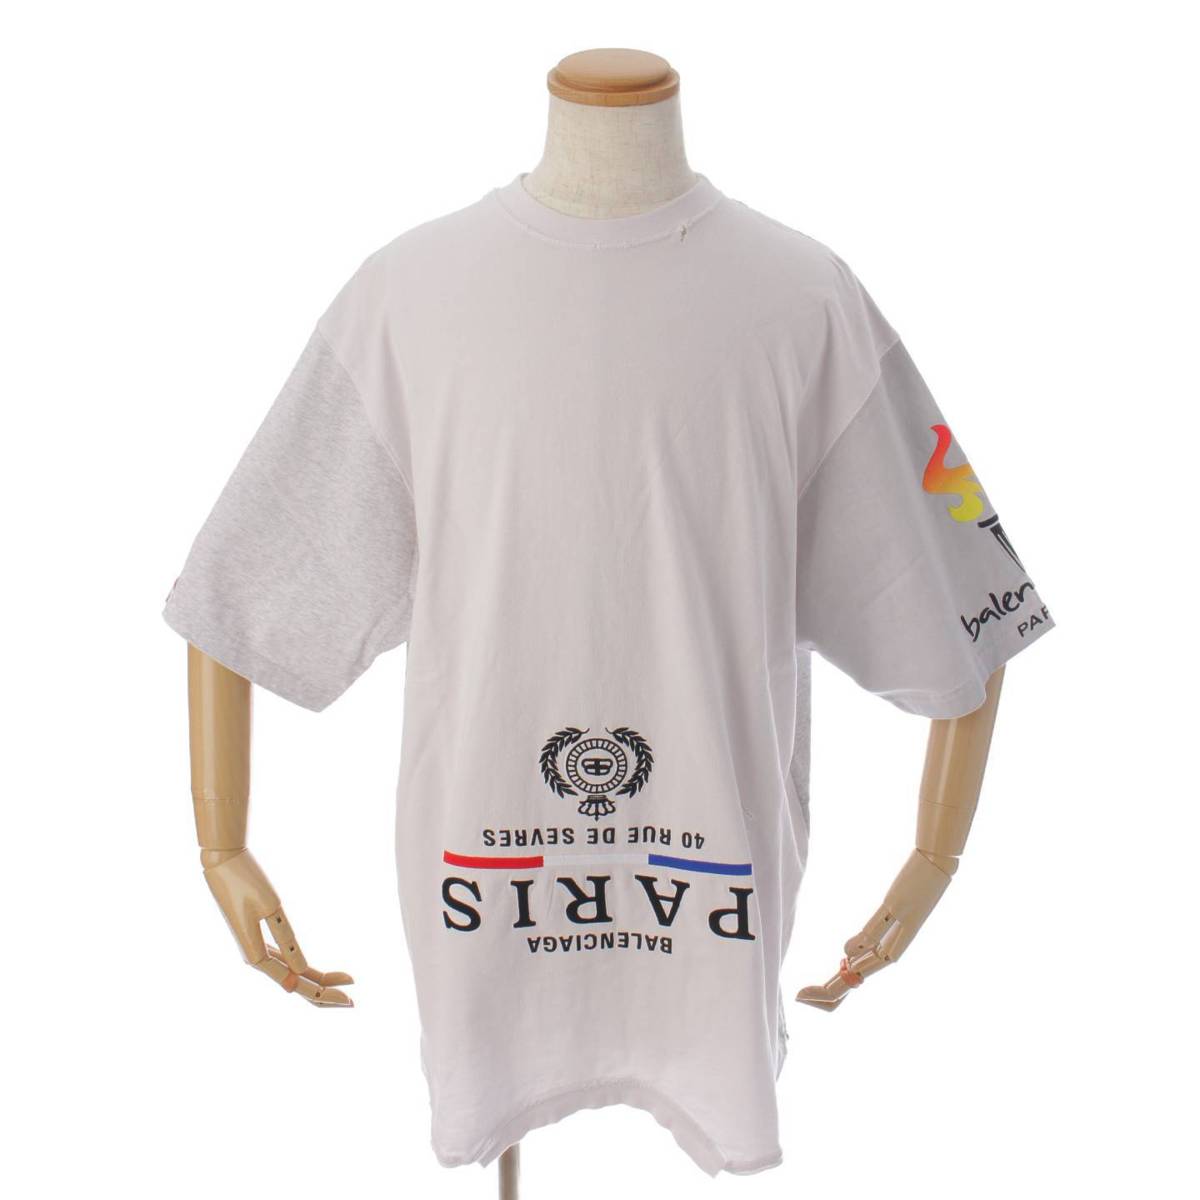 バレンシアガ(Balenciaga) メンズ 22AW TMVC9 ダメージ加工 リメイク コットン Tシャツ ホワイト×グレー 3